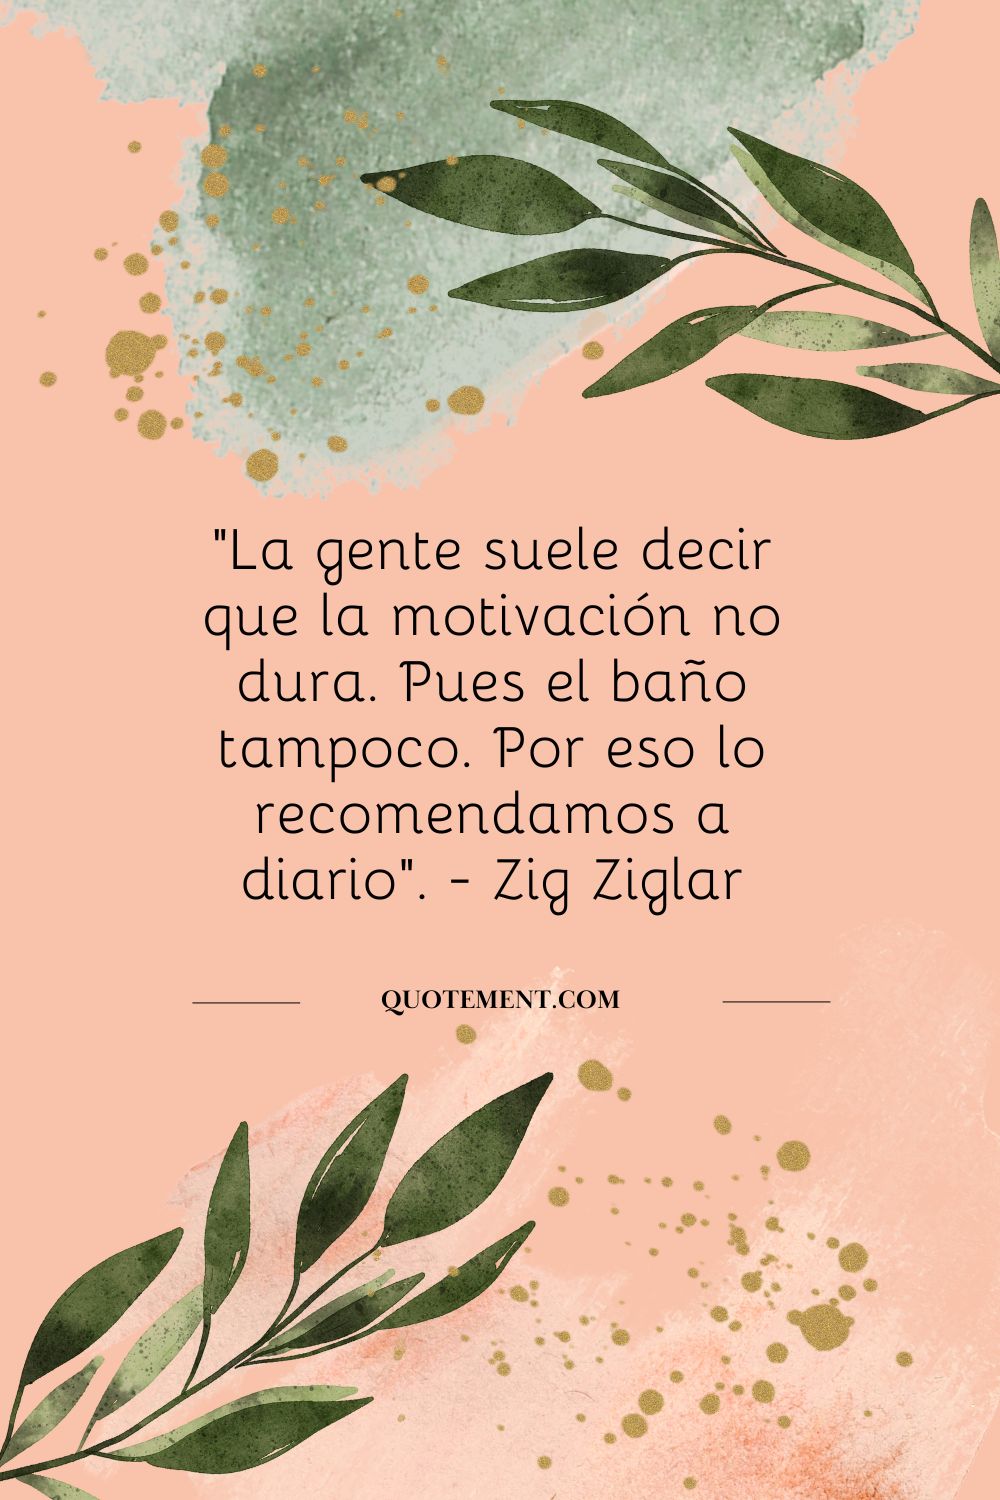 "La gente suele decir que la motivación no dura. Pues el baño tampoco. Por eso lo recomendamos a diario". - Zig Ziglar